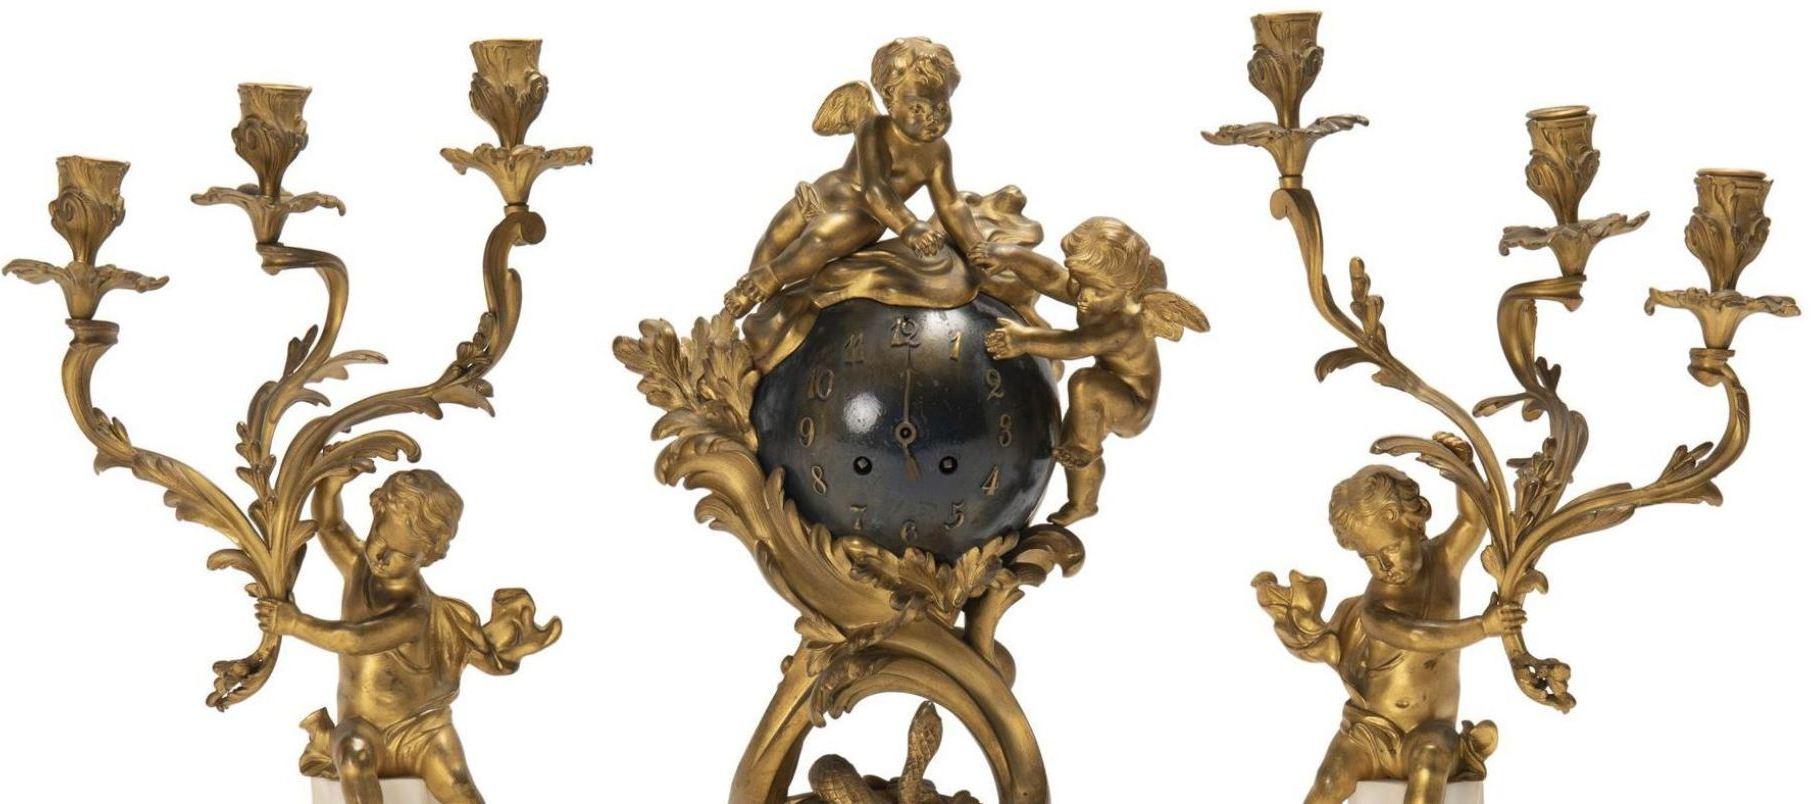 Hand-Carved French Gilt-Bronze 3 Piece Orbital Clock Garniture, with Cherubs